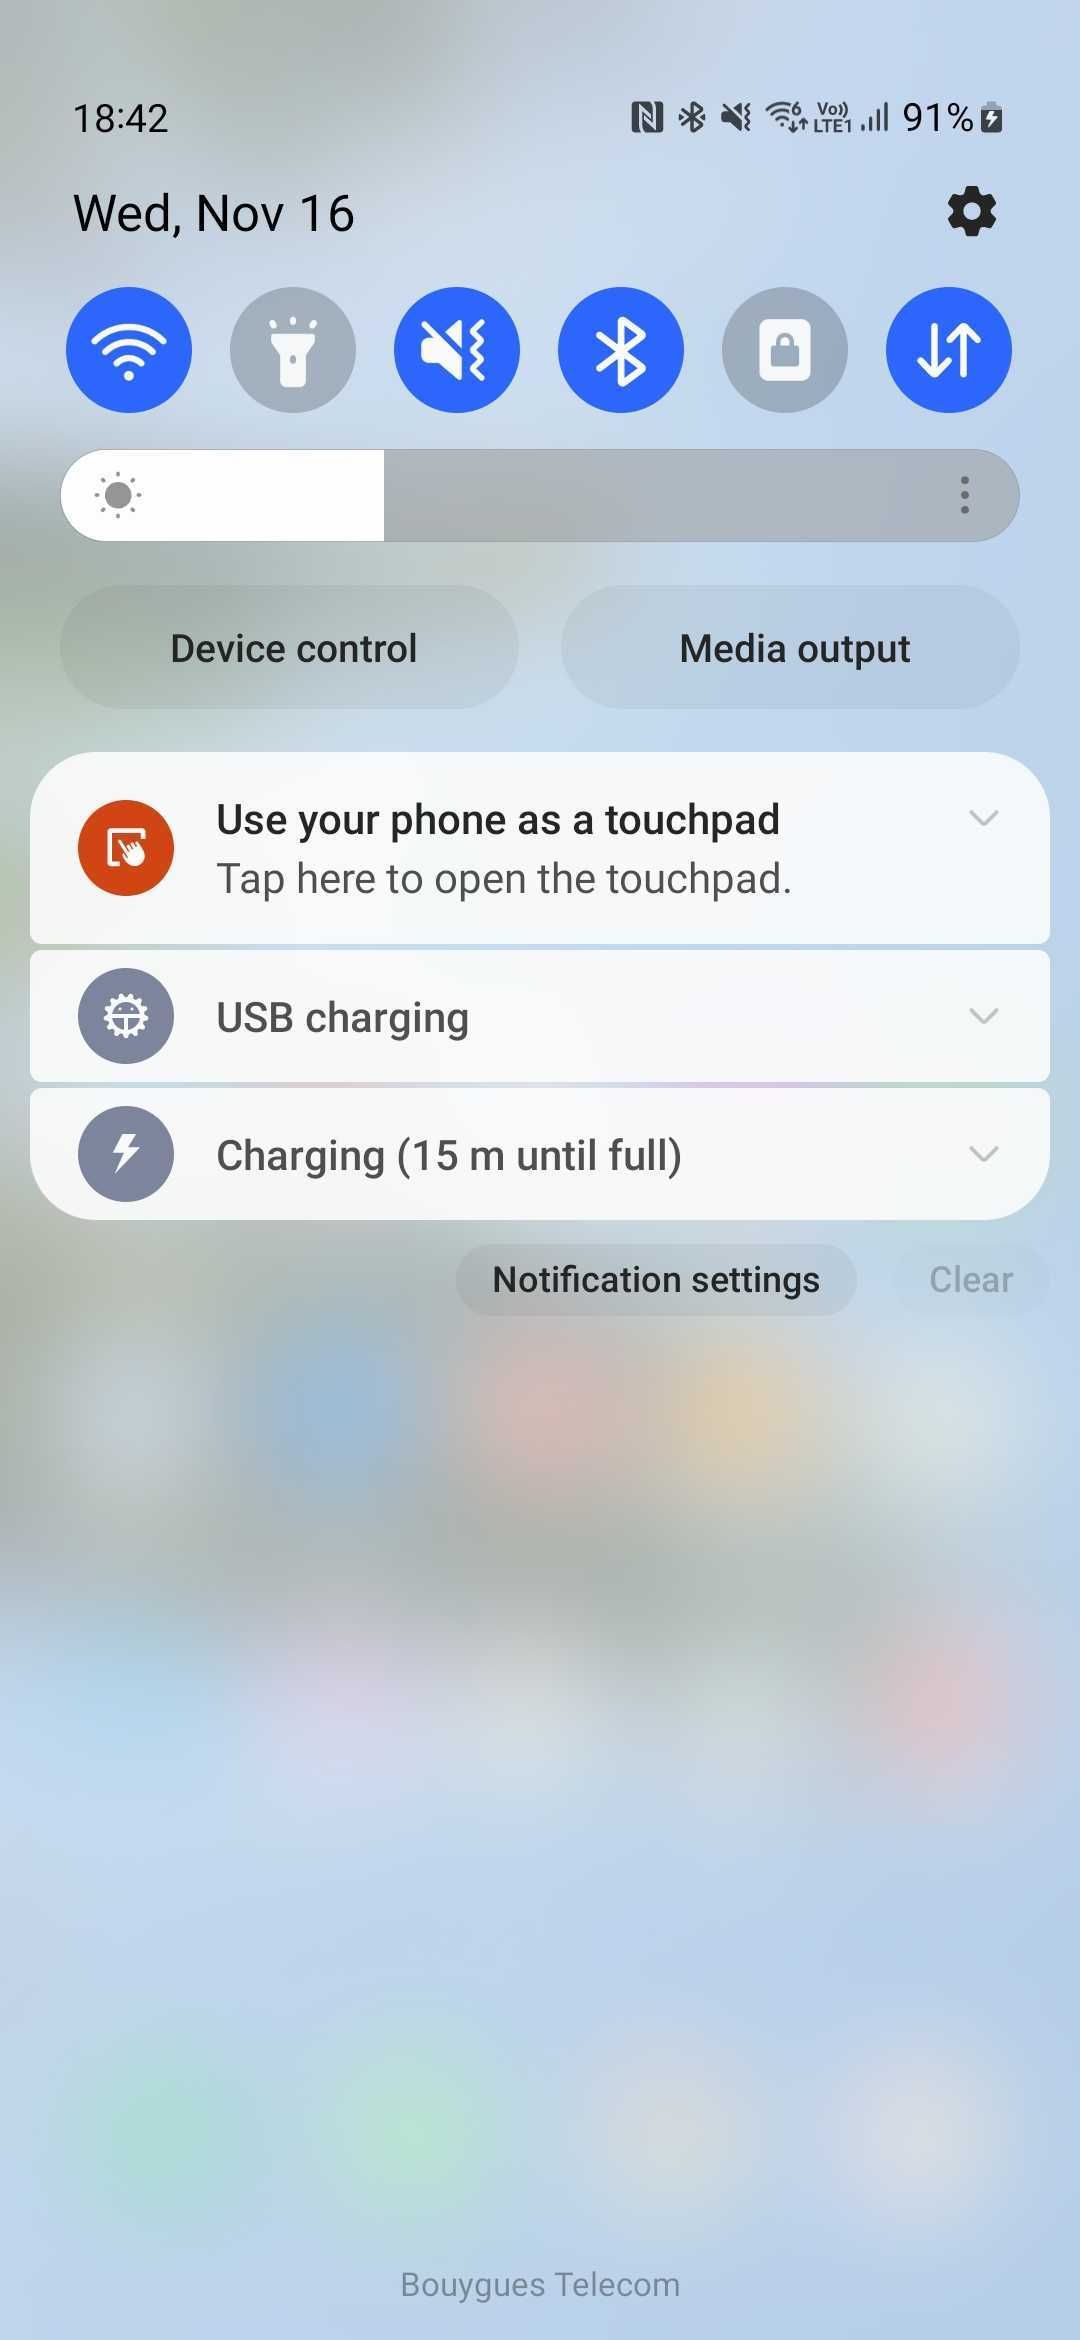 Certifique-se de aceitar a notificação do Samsung DeX para usar o telefone como touchpad.